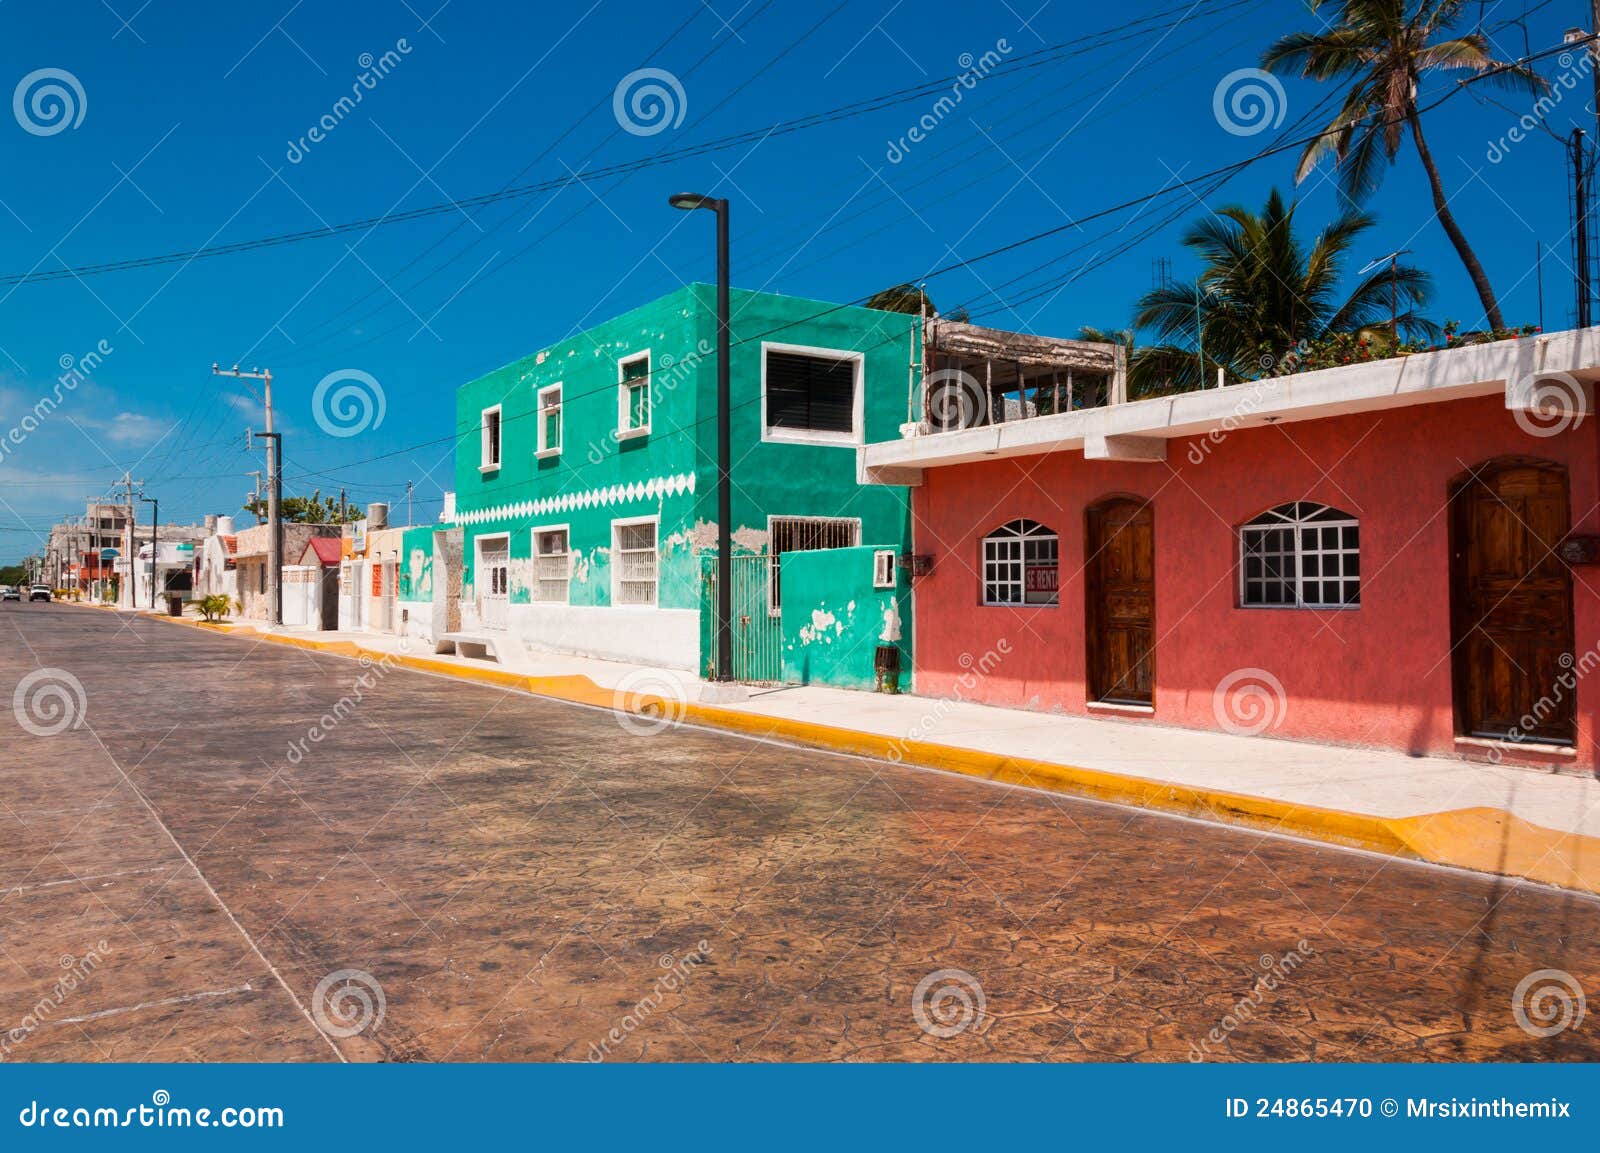 colorful street in town of progreso yucatan mexico